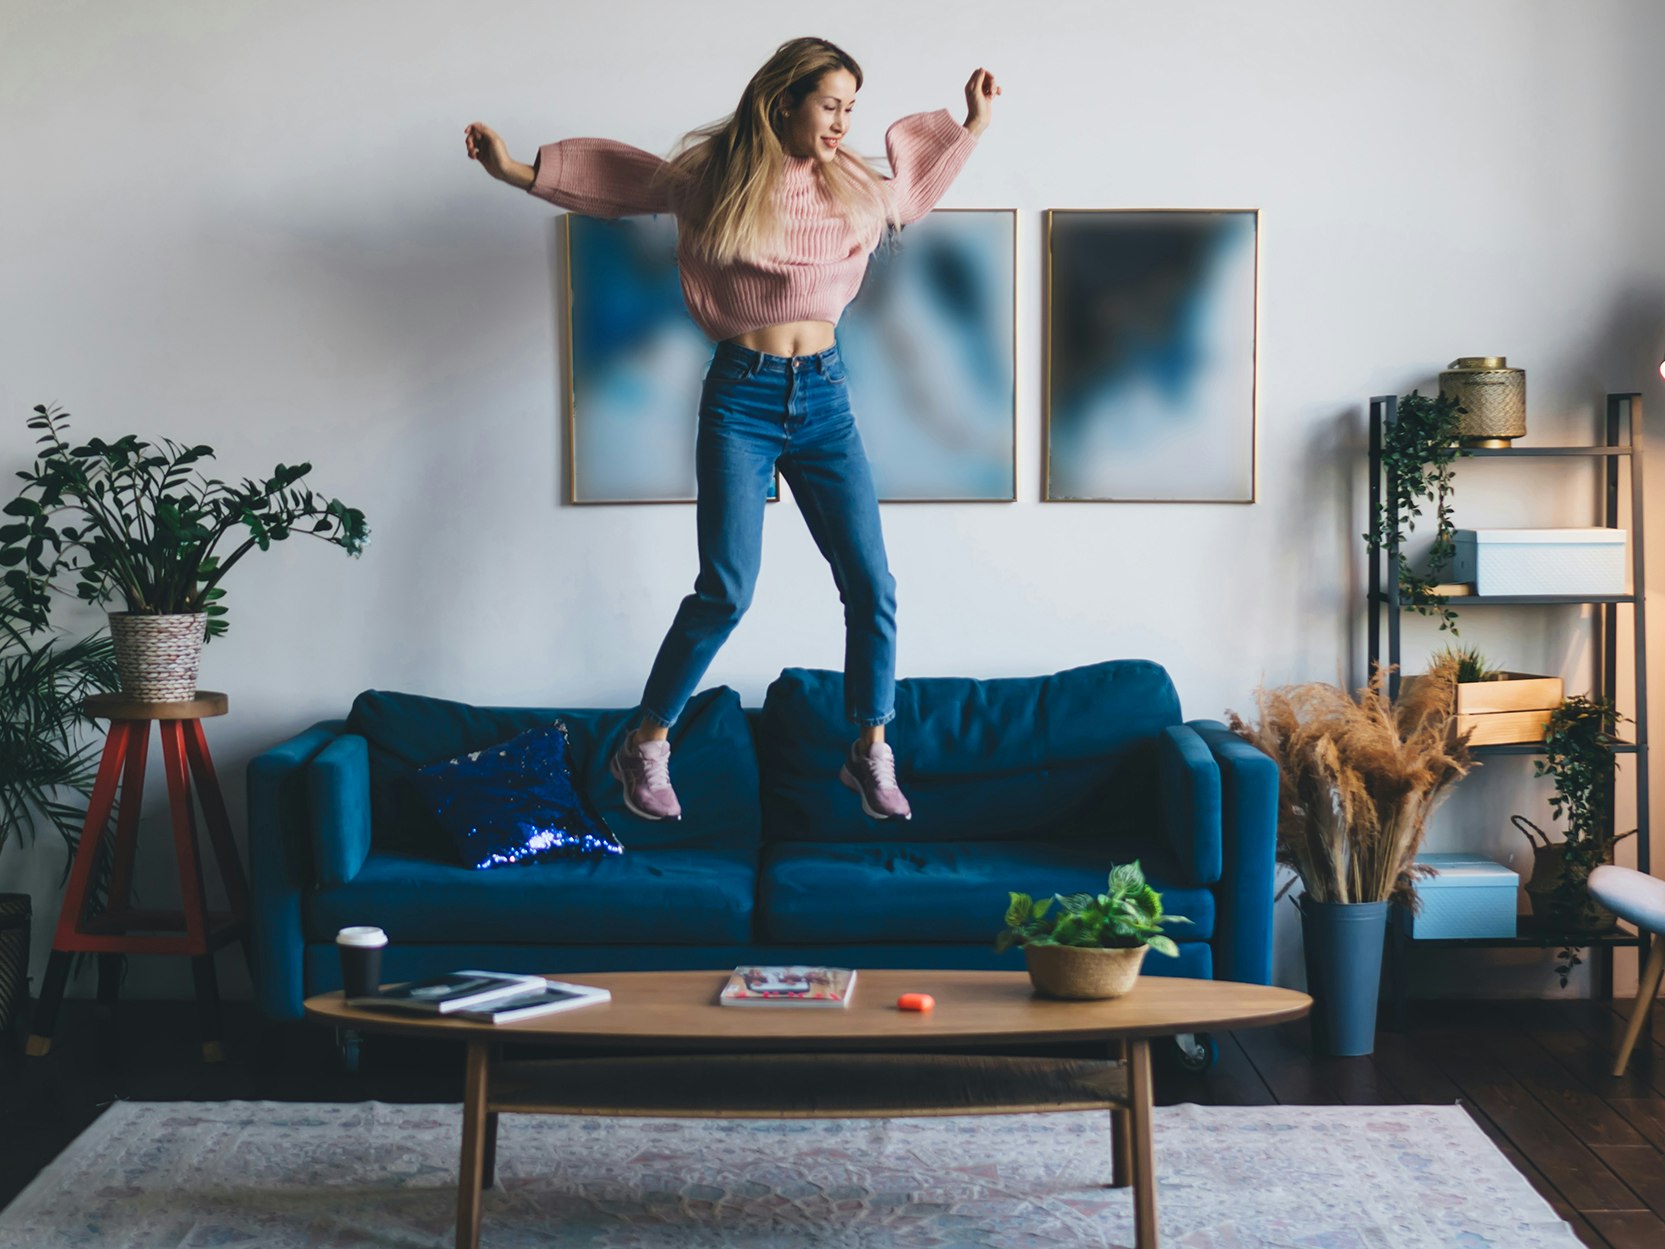 Bilde av ung kvinne som hopper i sofaen i en leilighet.